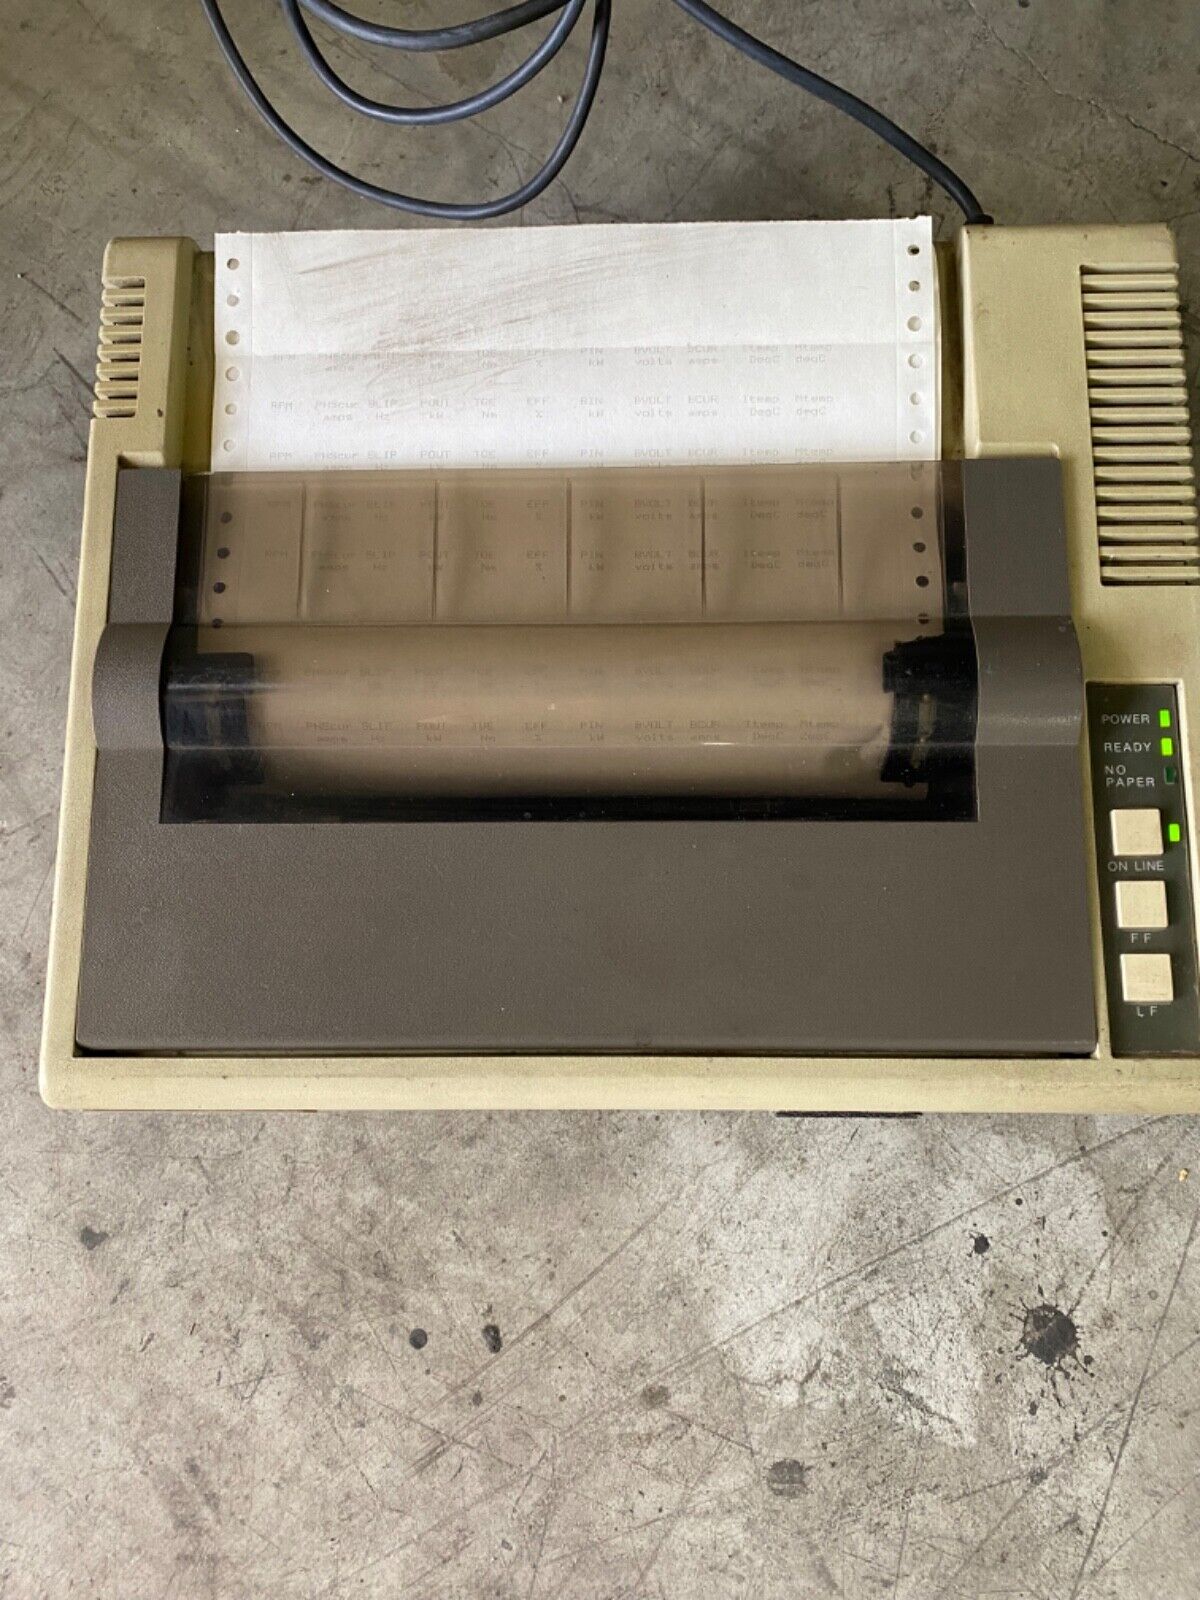 Vintage Hewlett Packard 82905B Printer